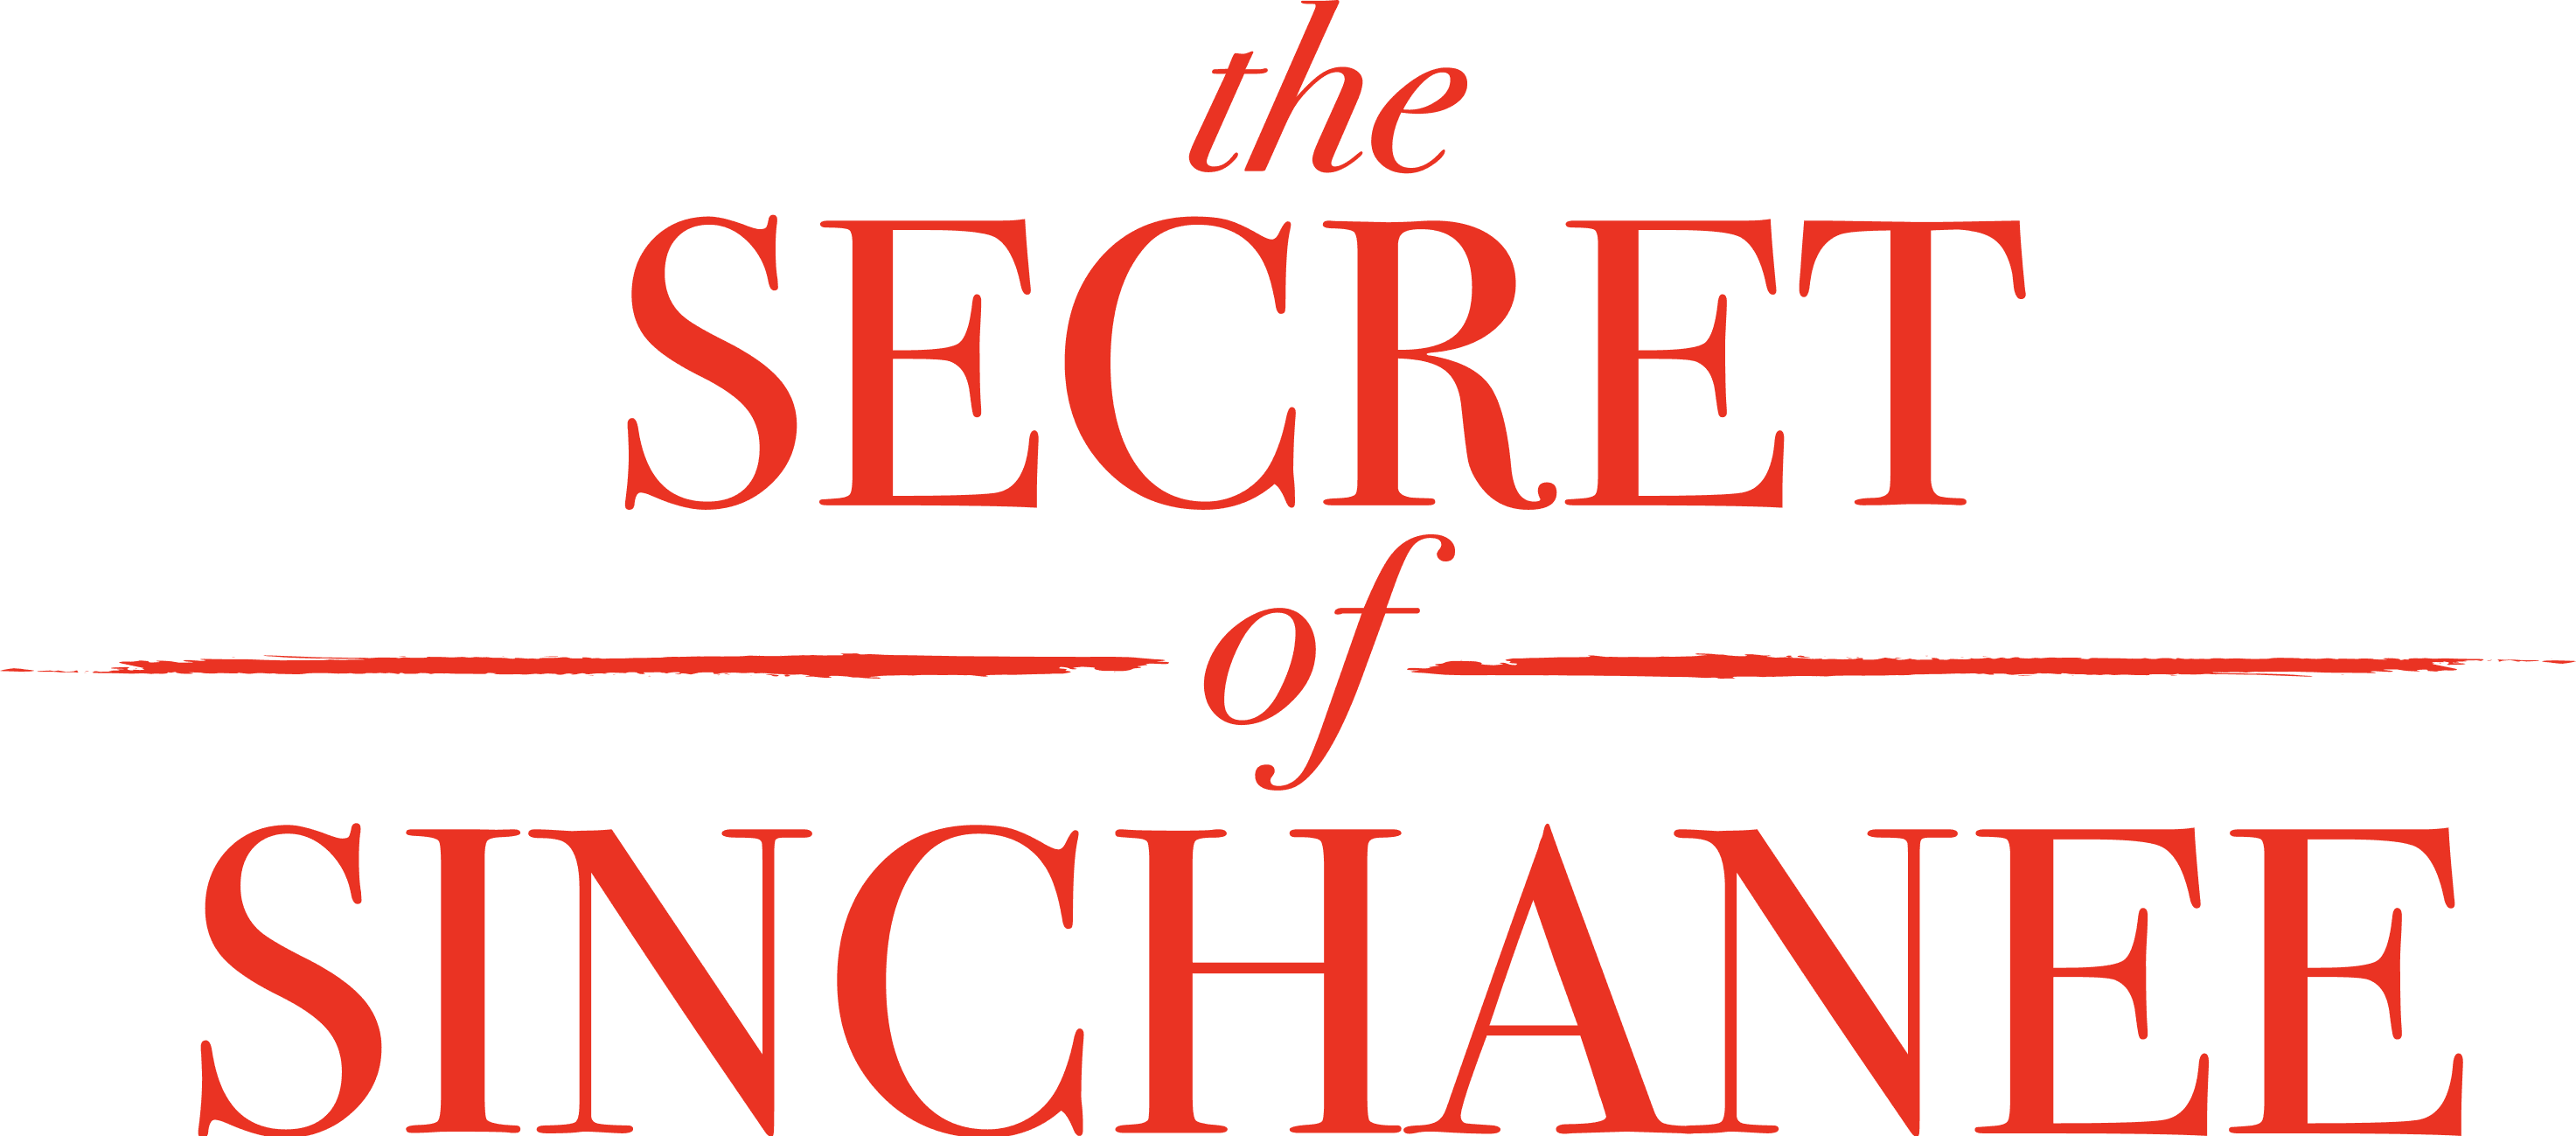 The Secret of Sinchanee logo